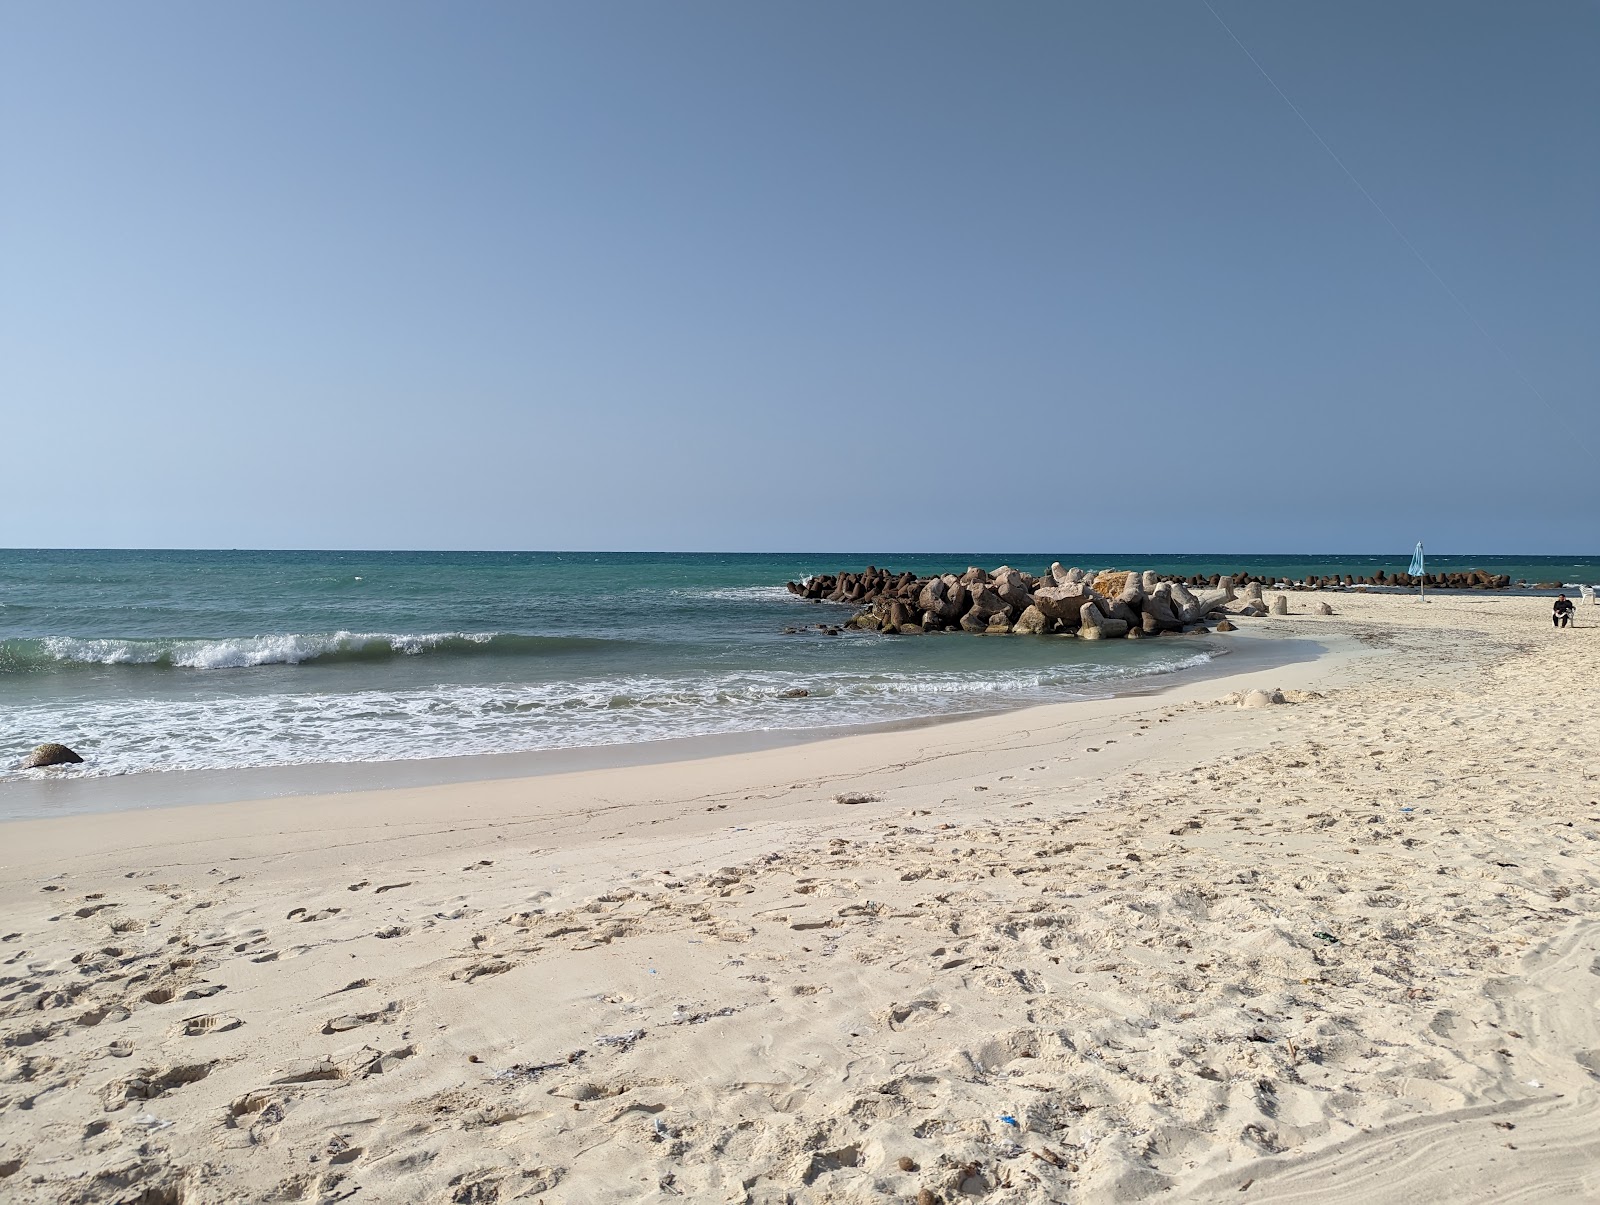 Al Bahri Beach'in fotoğrafı beyaz kum yüzey ile